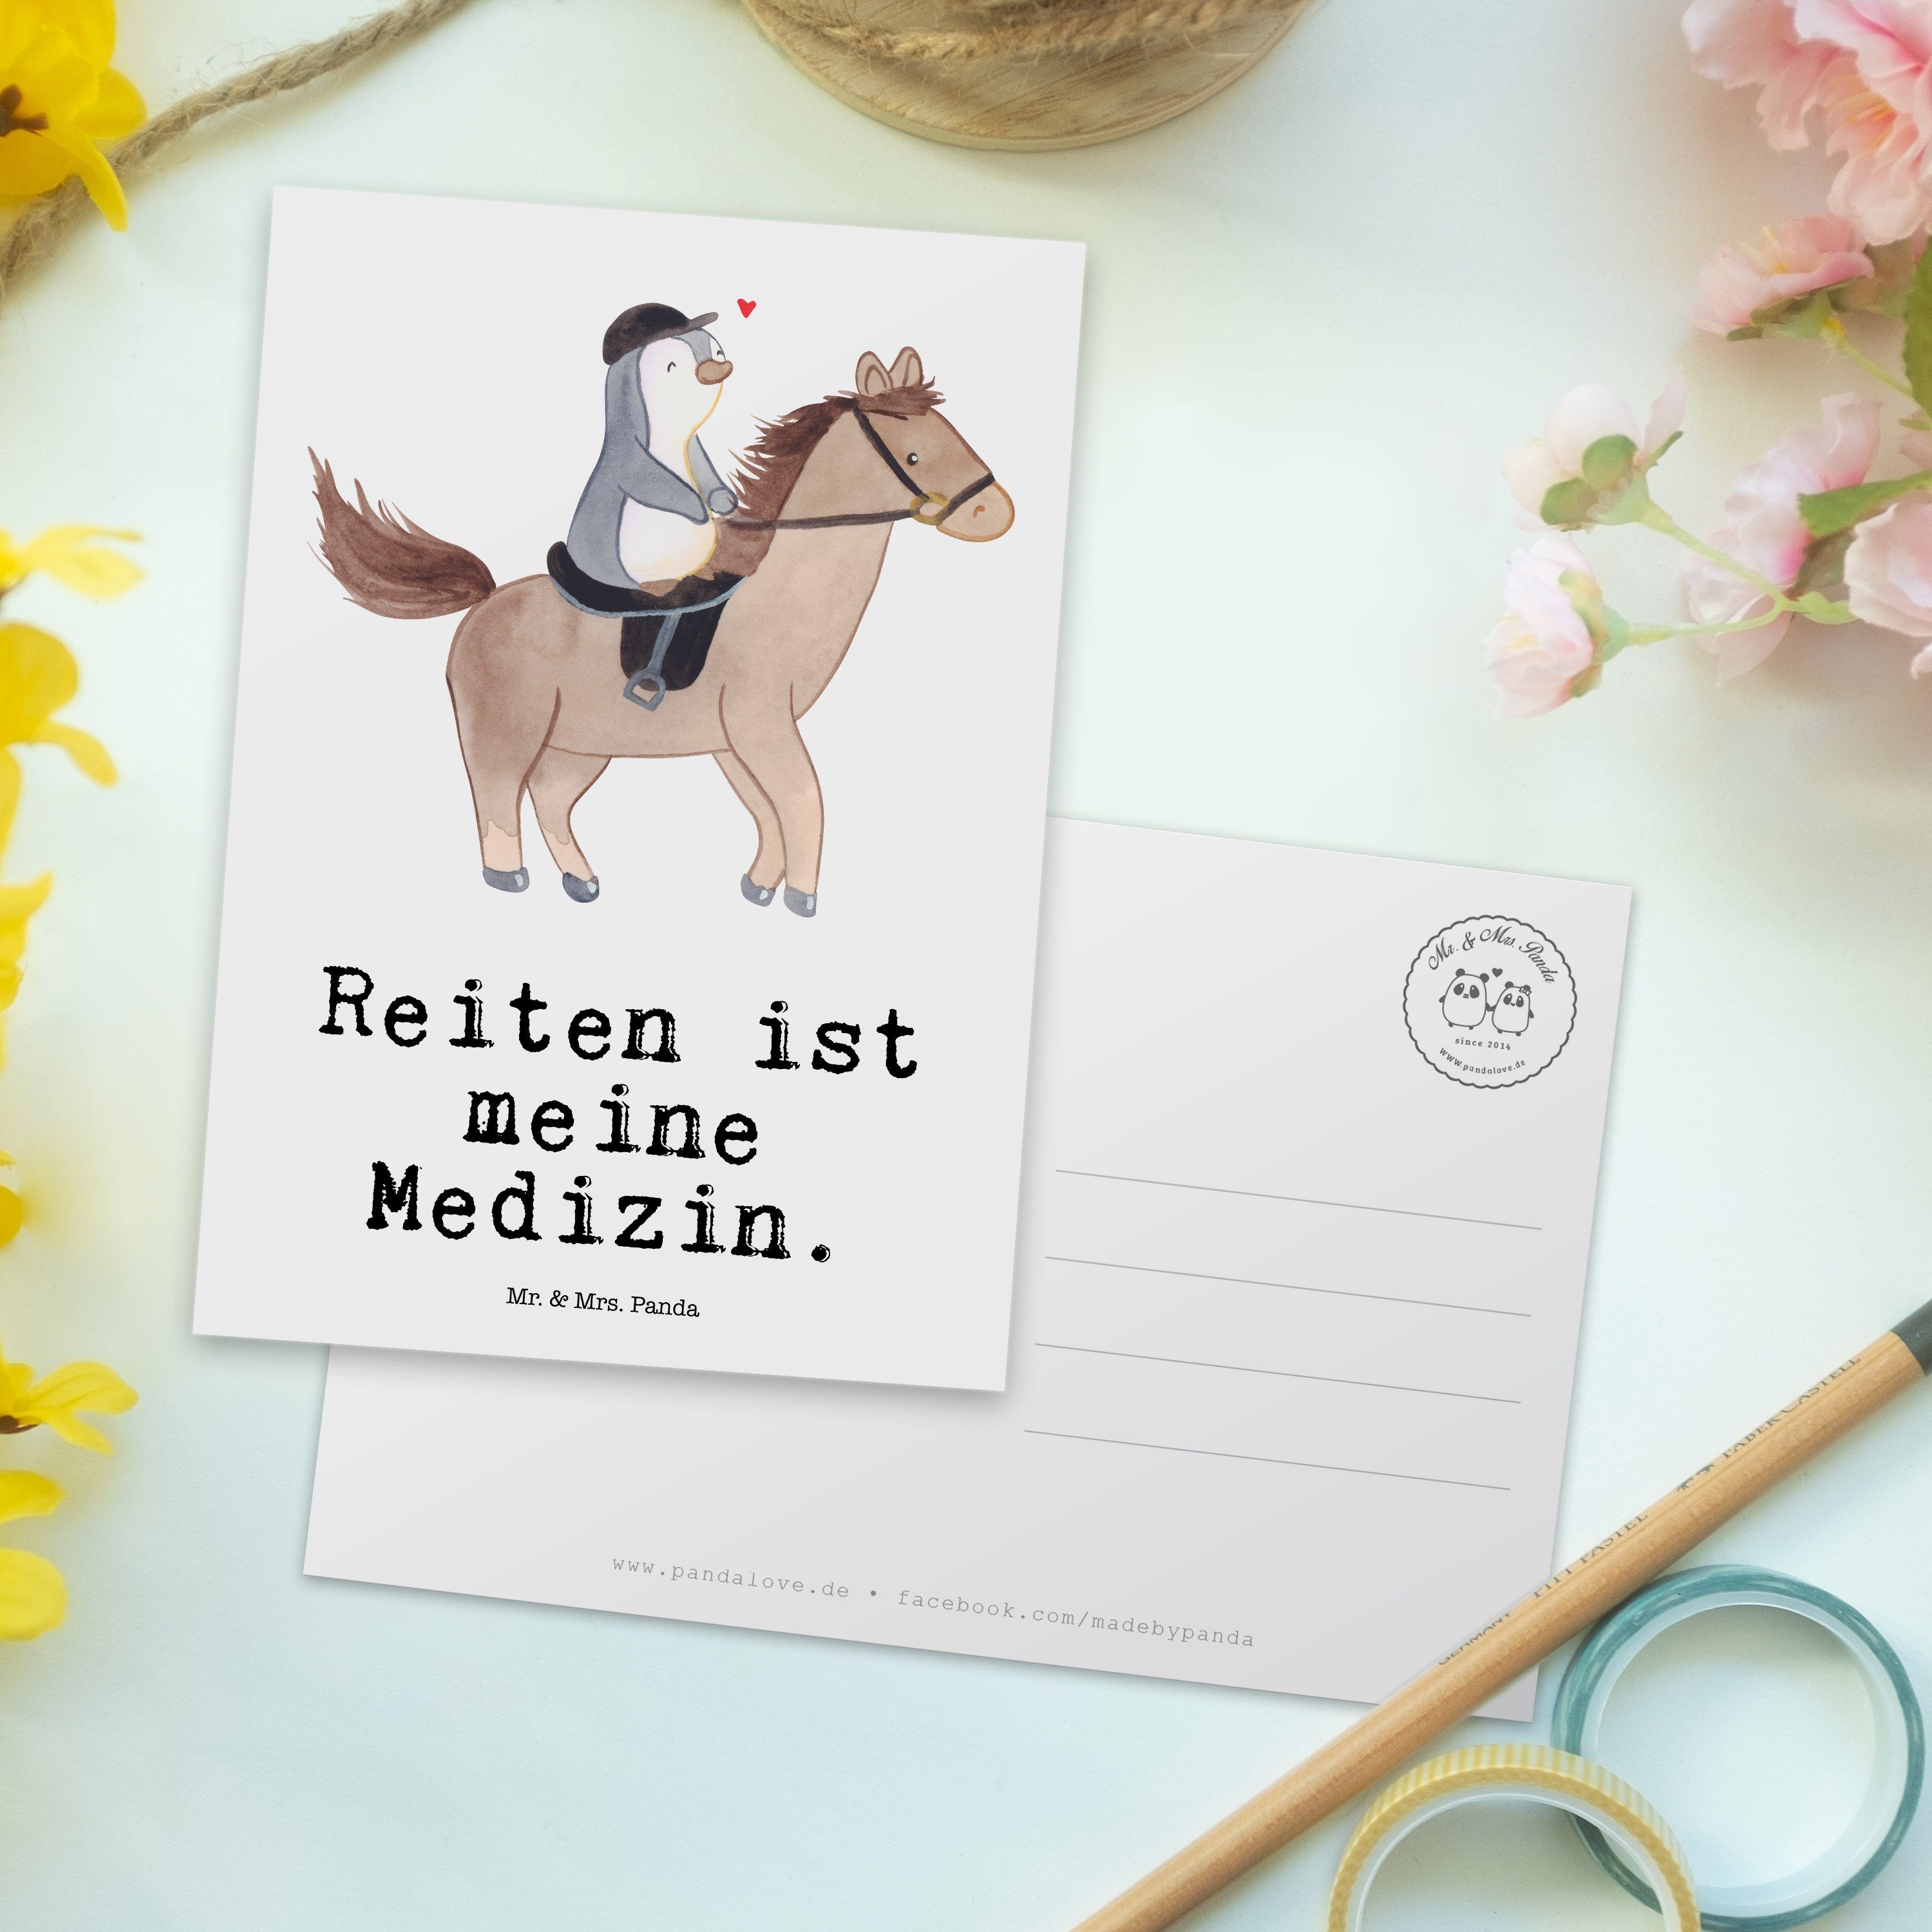 Mr. & Mrs. - Pferd Panda - Postkarte Medizin Weiß Reiten Geschenk, Einladungskarte Pferdereiten